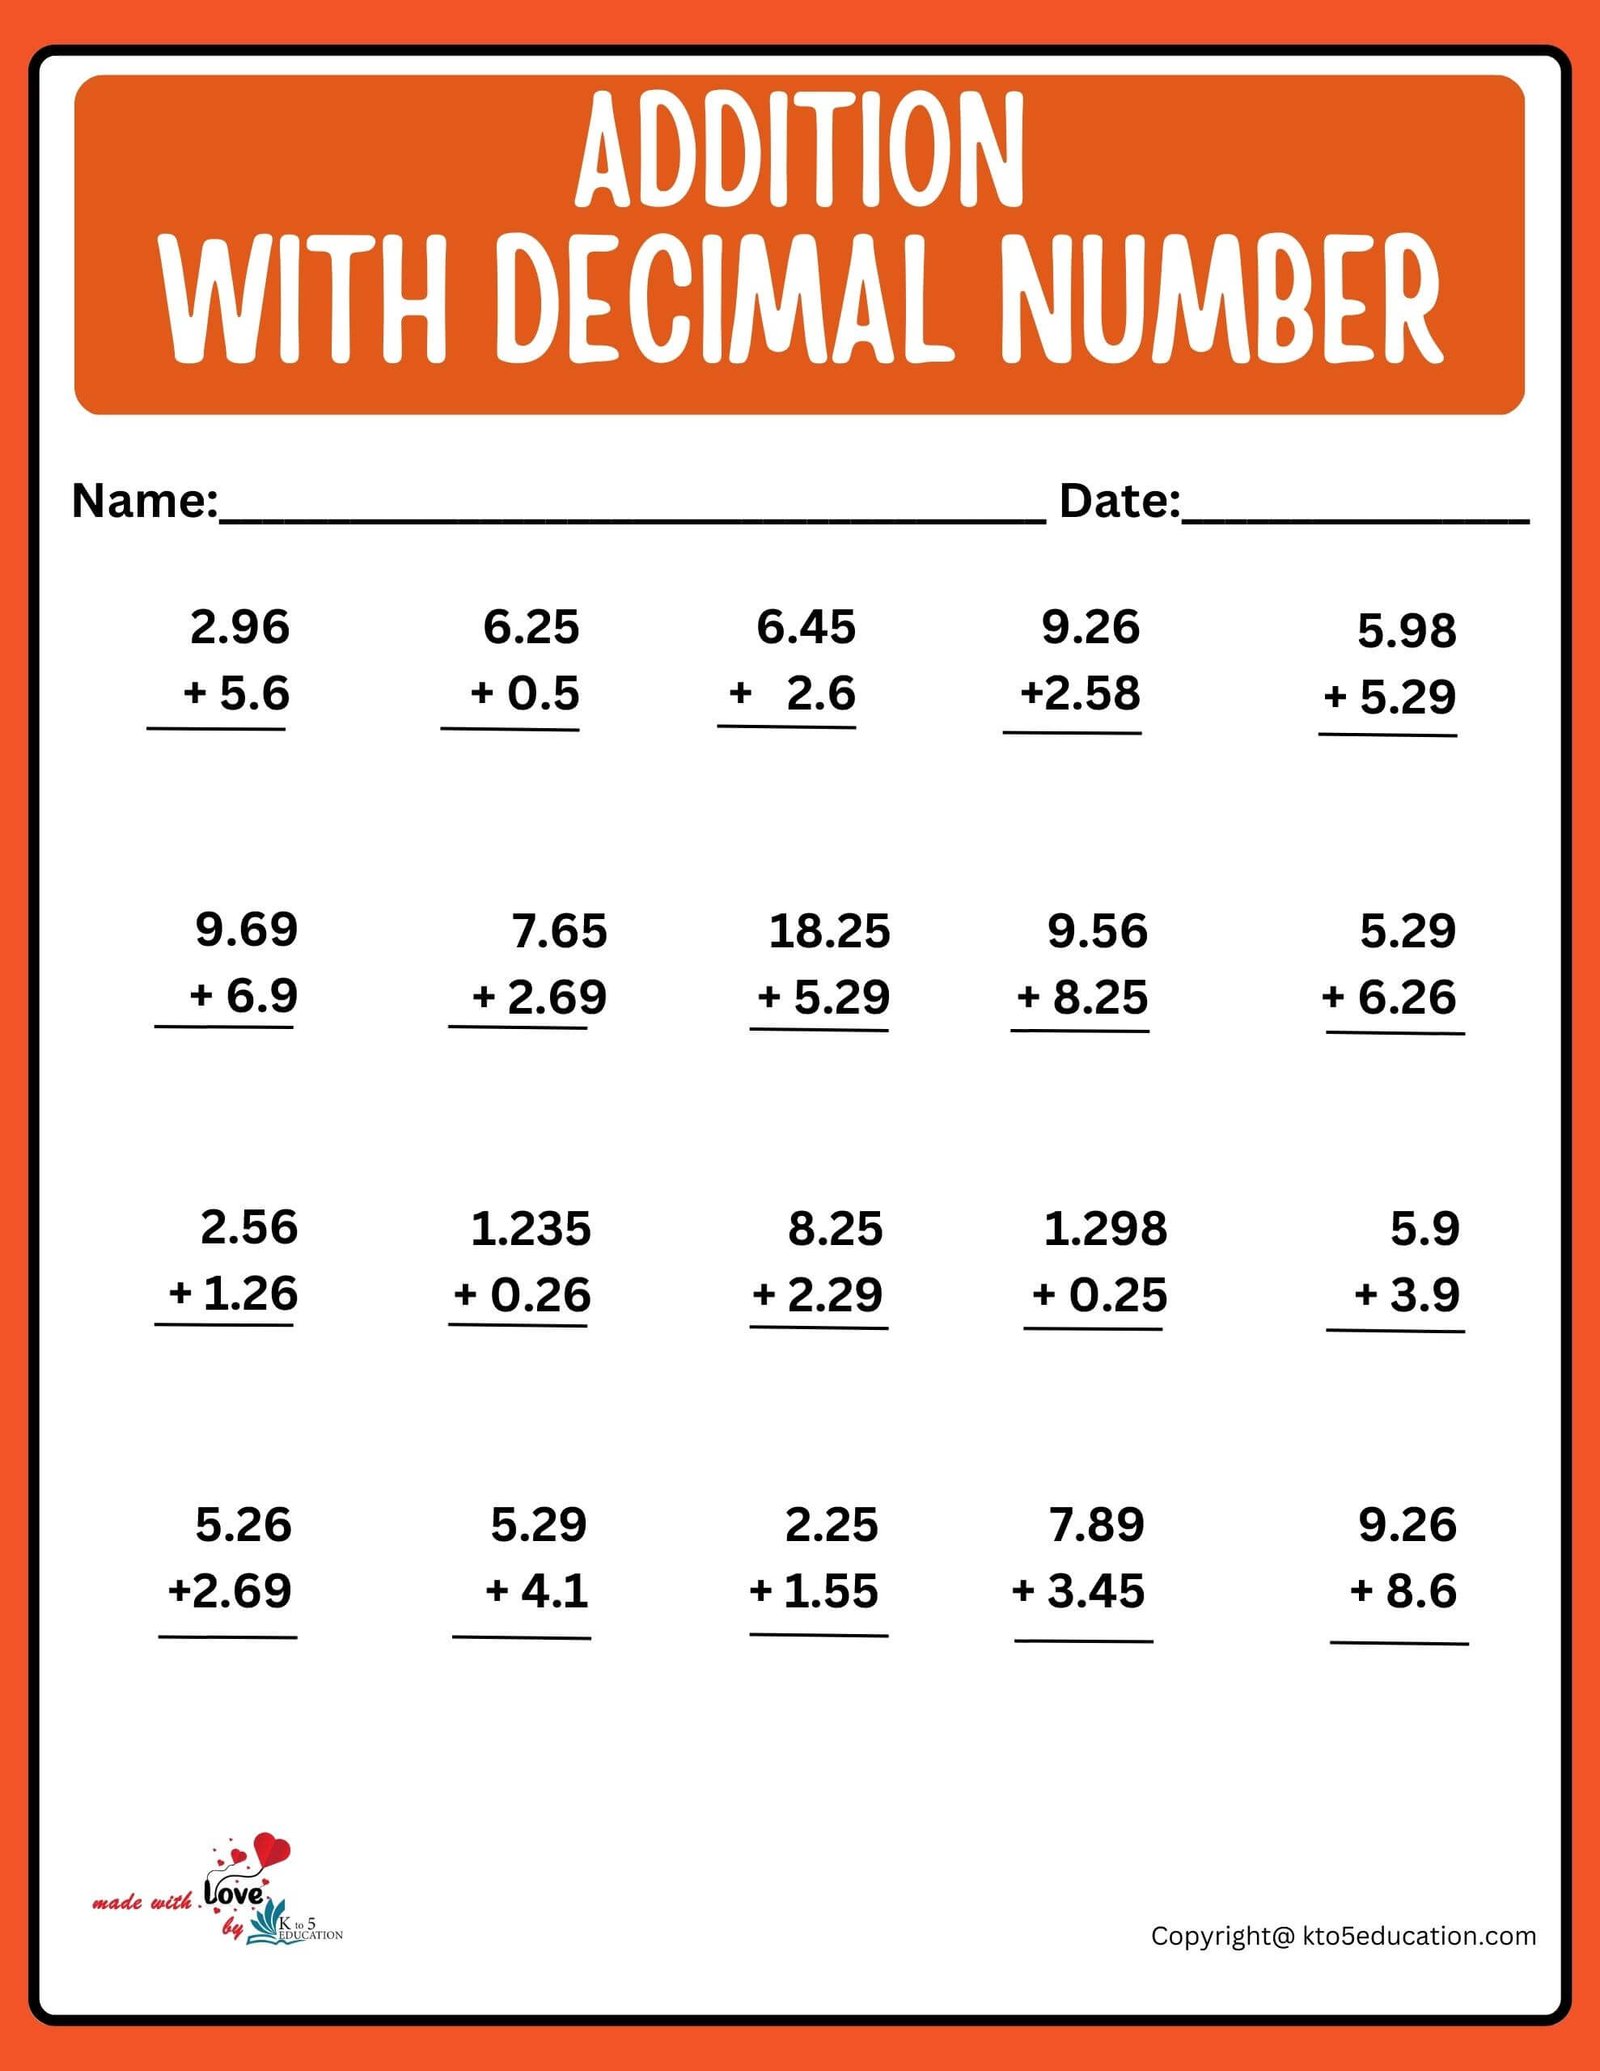 Addition With Decimal Number Worksheet